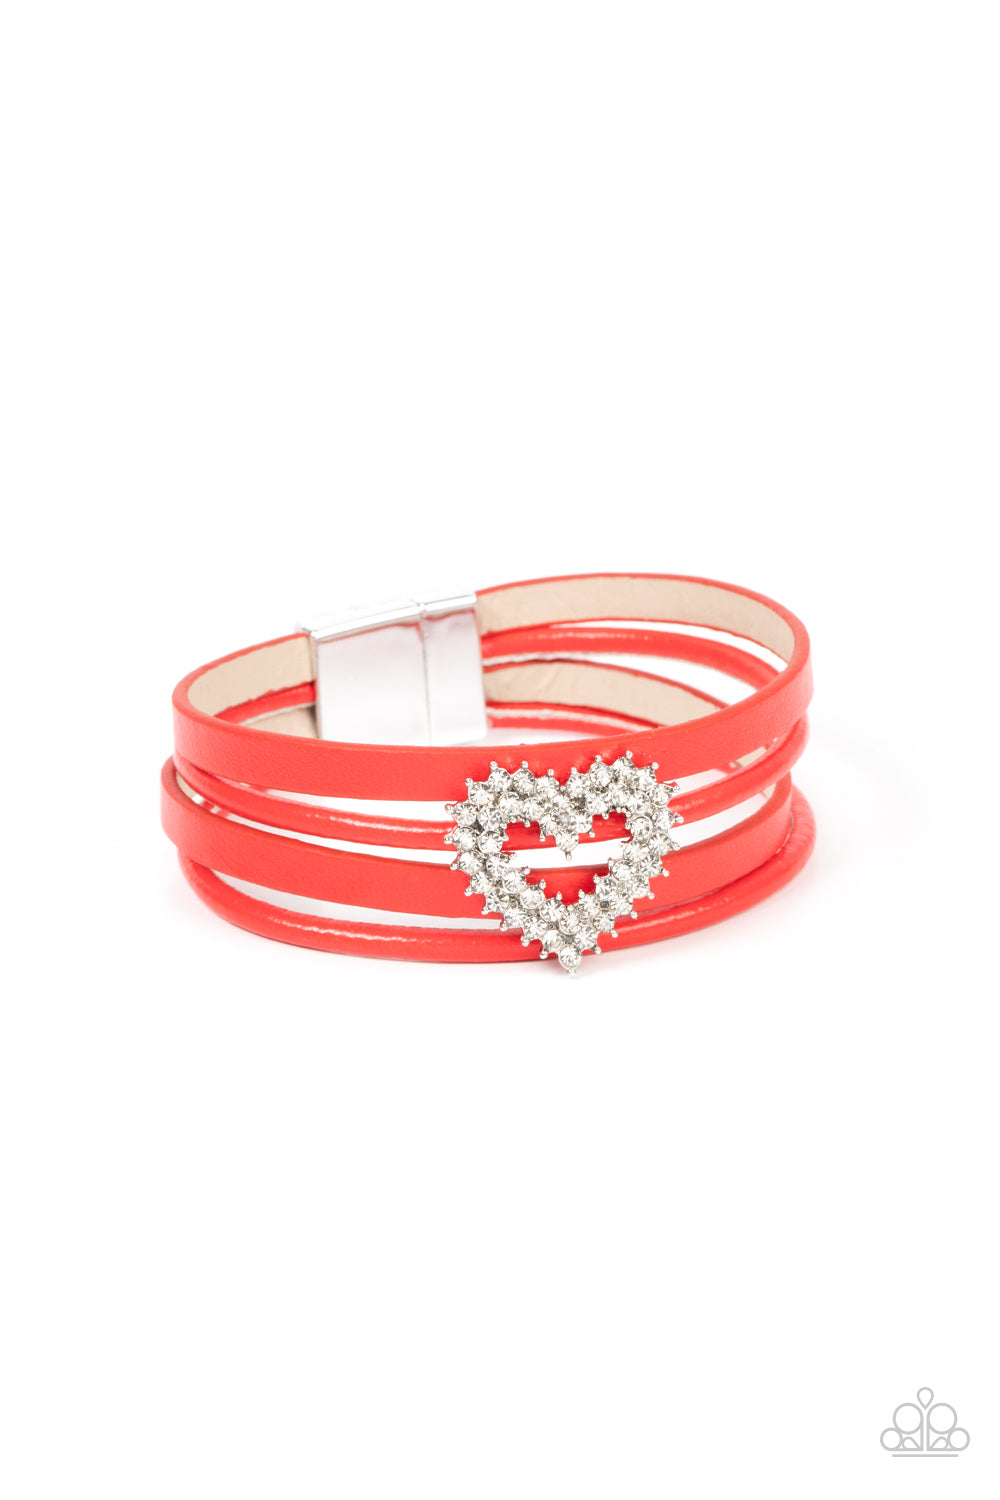 Wildly in Love - Red Bracelet